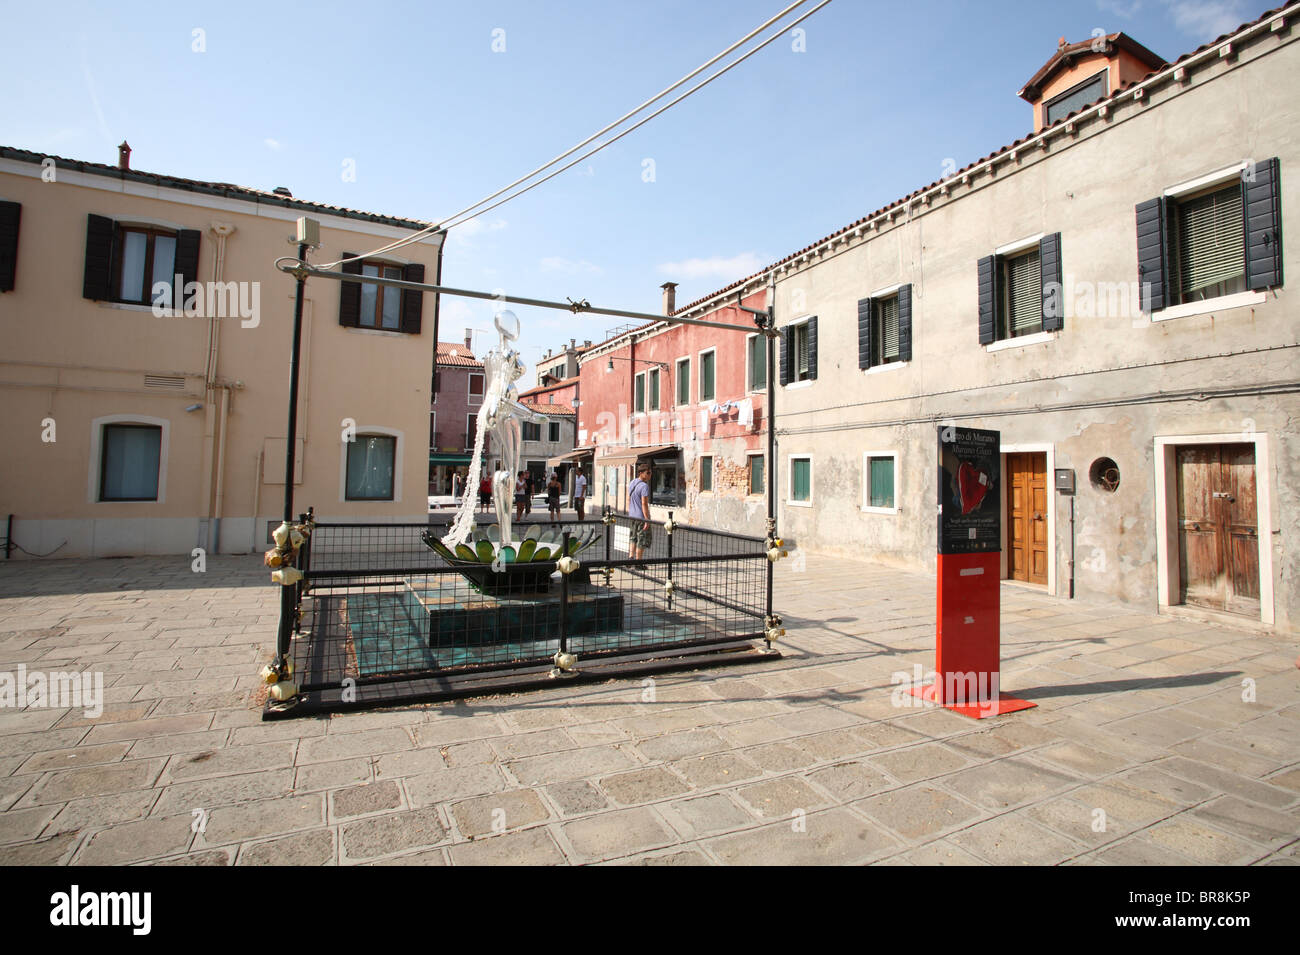 Le paysage urbain de Murano, Venise, Italie Banque D'Images